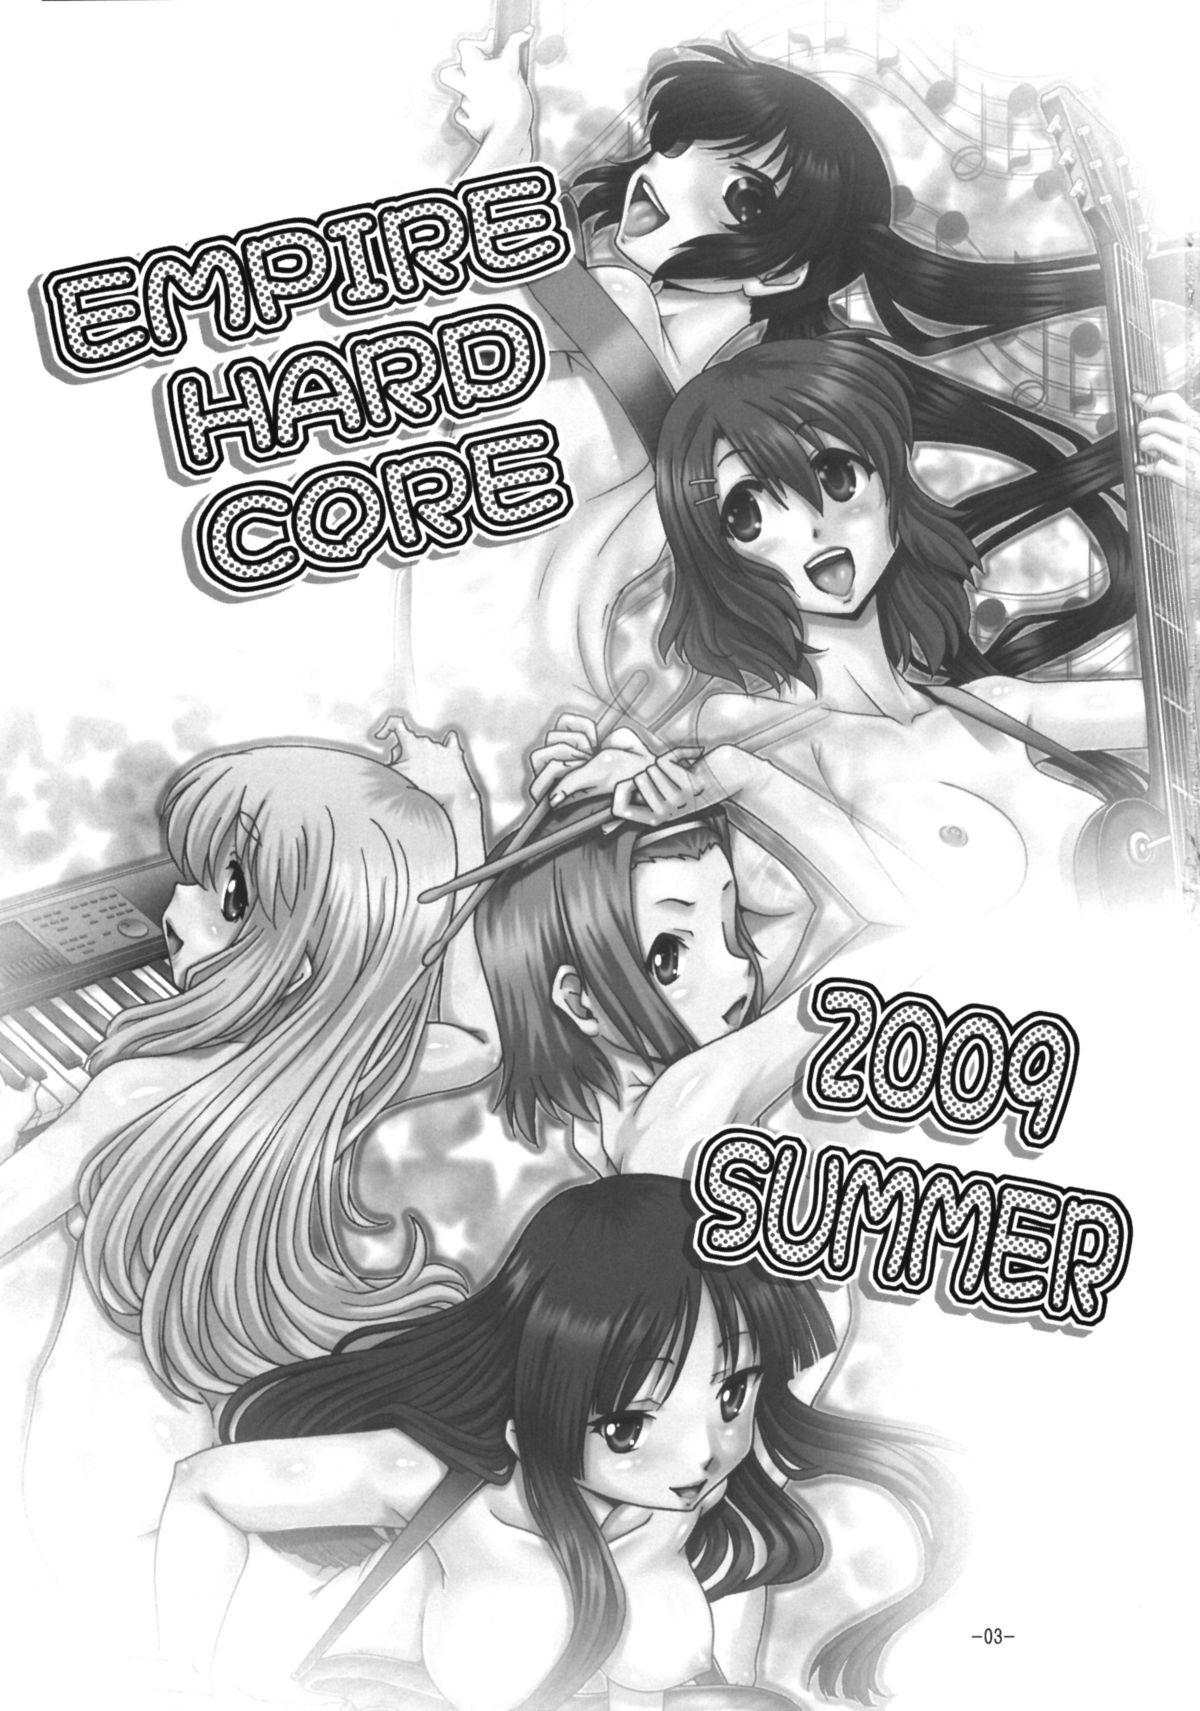 (C76) [大本営 (TYPE.90)] EMPIRE HARD CORE 2009 SUMMER (けいおん!)